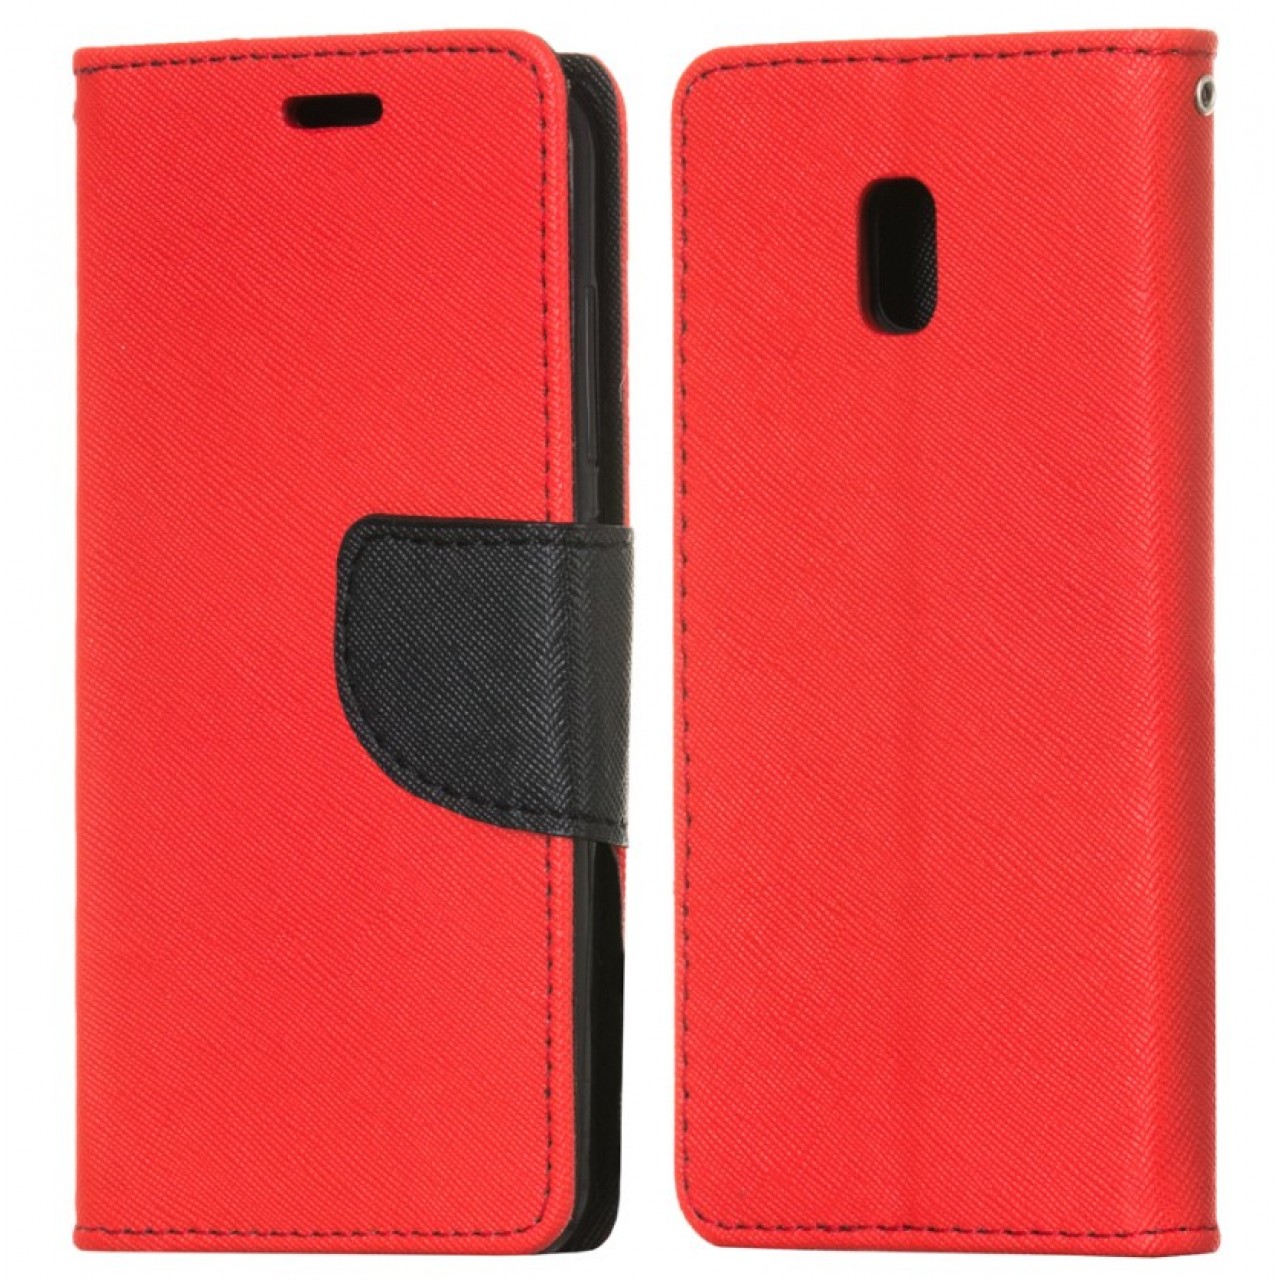 Θήκη Samsung Galaxy J3 (2017) PU Leather Πορτοφόλι flip Fancy Diary - 4275 - Κόκκινο - OEM